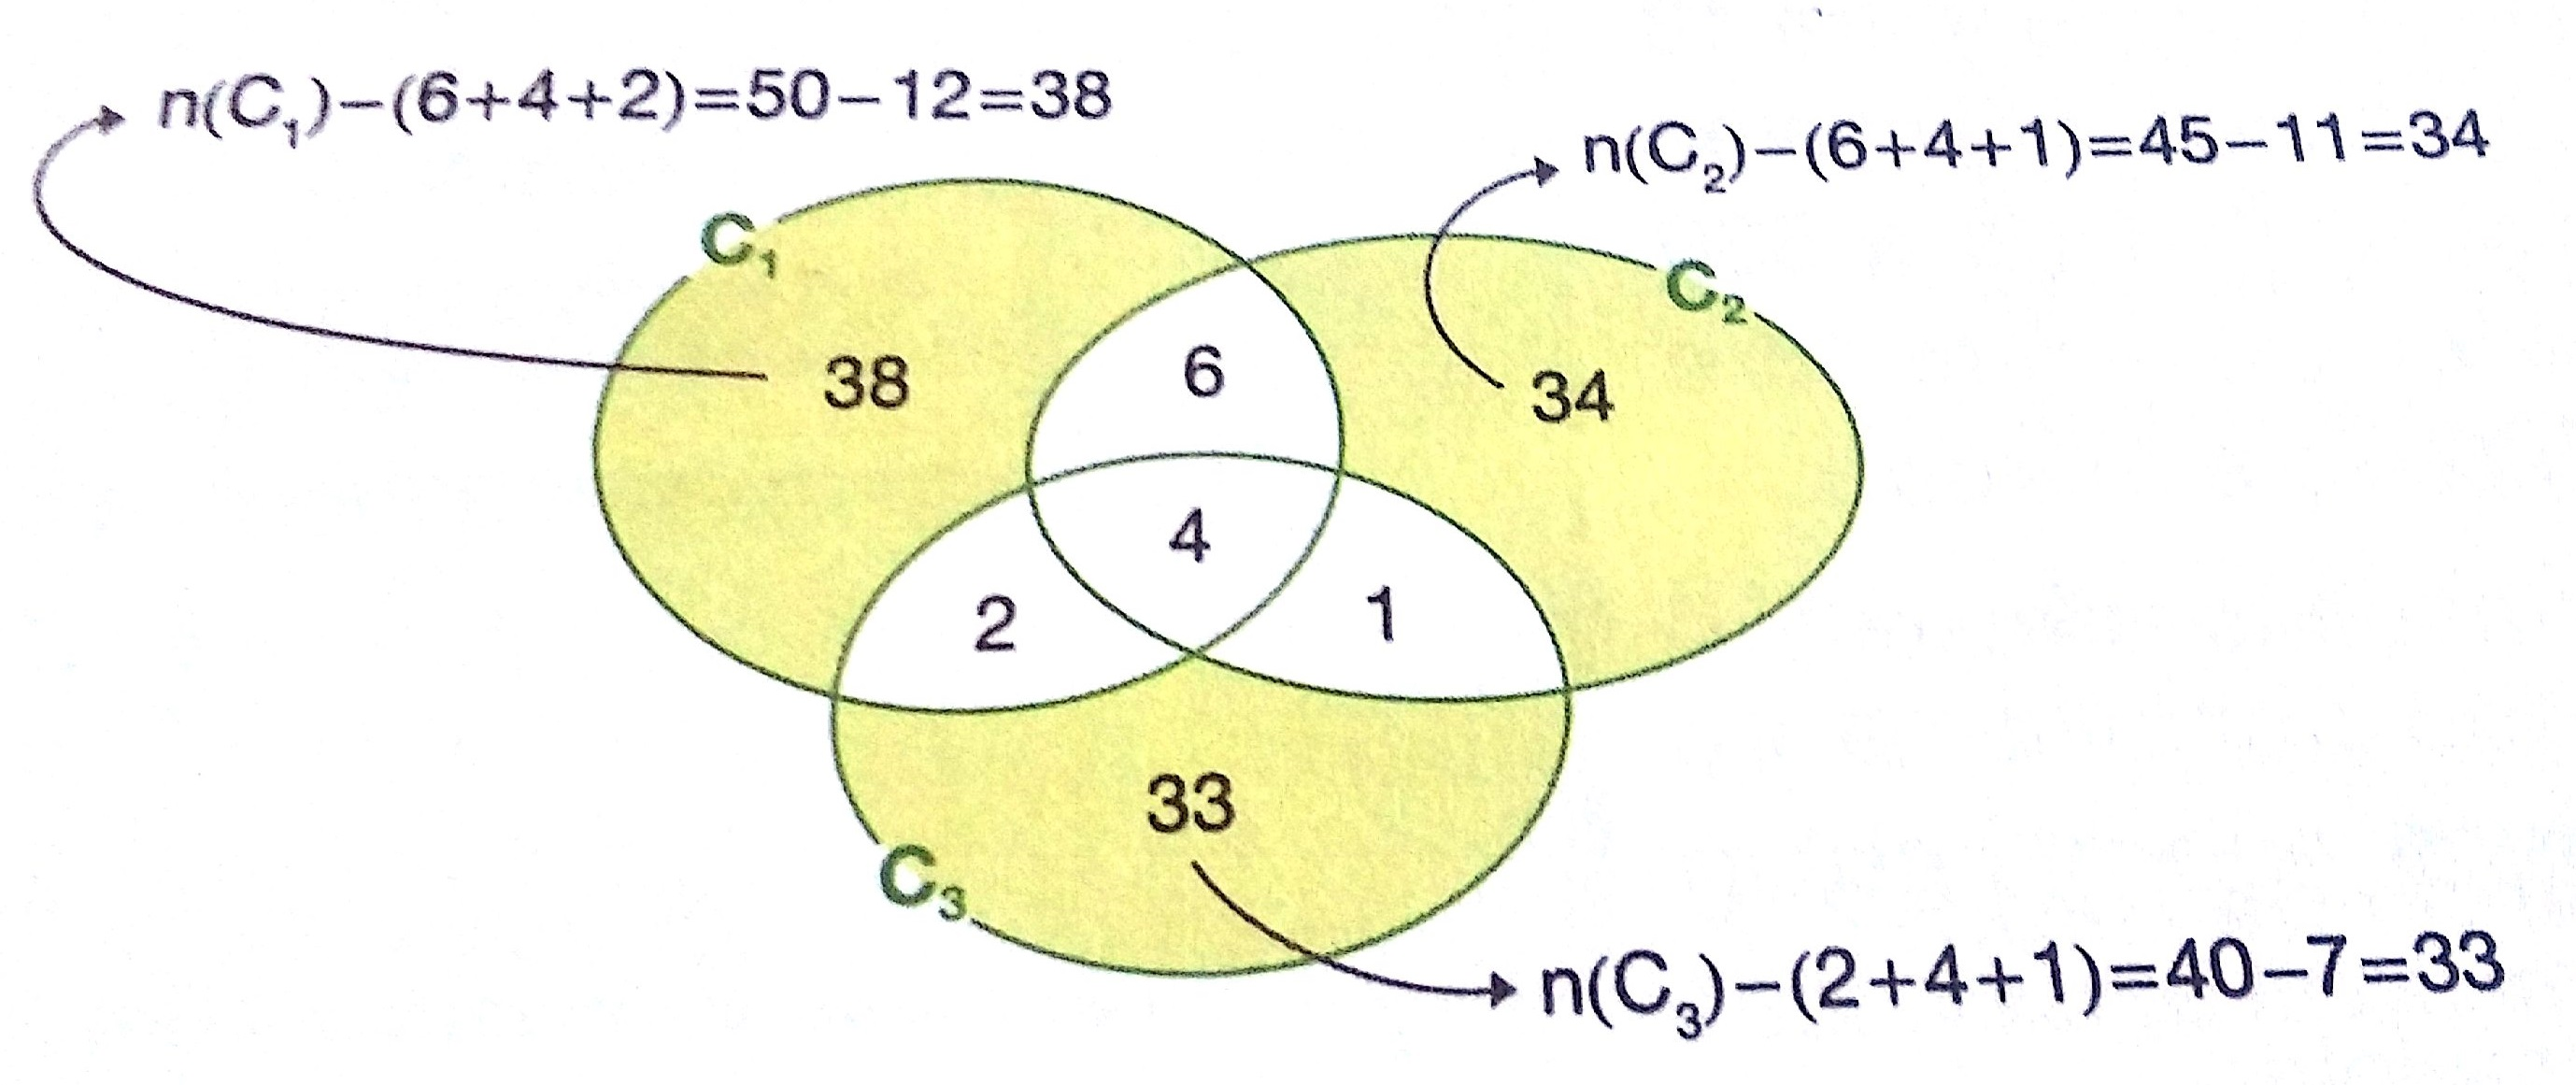 n(c3) = 40 n(c1 C2) = 10 n(c1 C3) = 6 n(c2 C3) = 5 n(c1 C2 C3) = 4 Anotamos no diagrama o número de páginas comuns aos três catálogos.